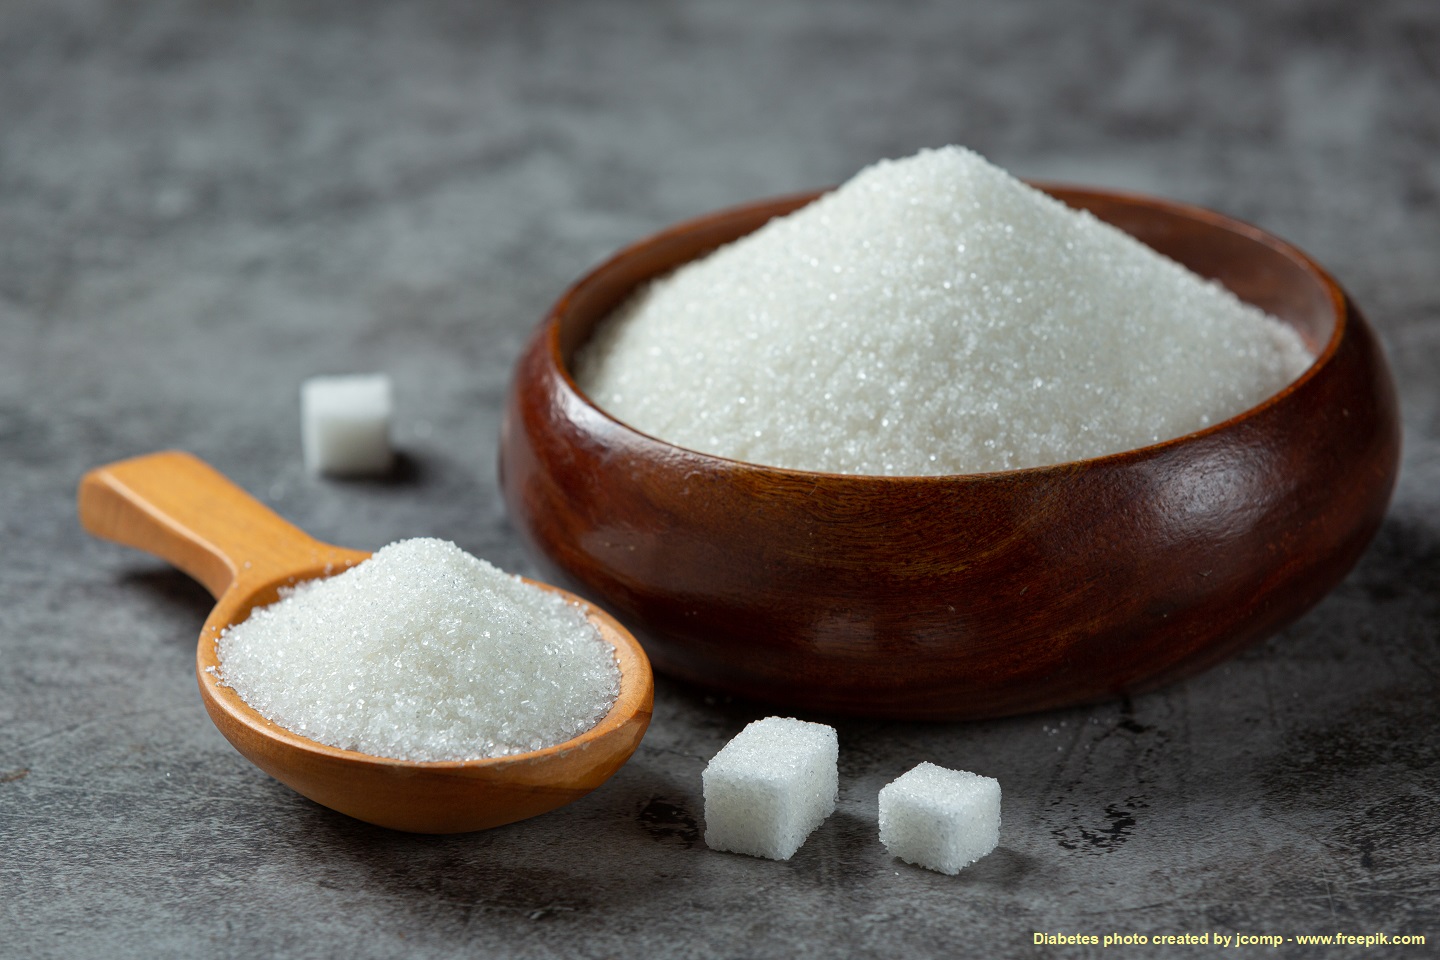 อินเดียขยายเวลาจำกัดส่งออกน้ำตาลทรายถึงเดือน ต.ค. 2566